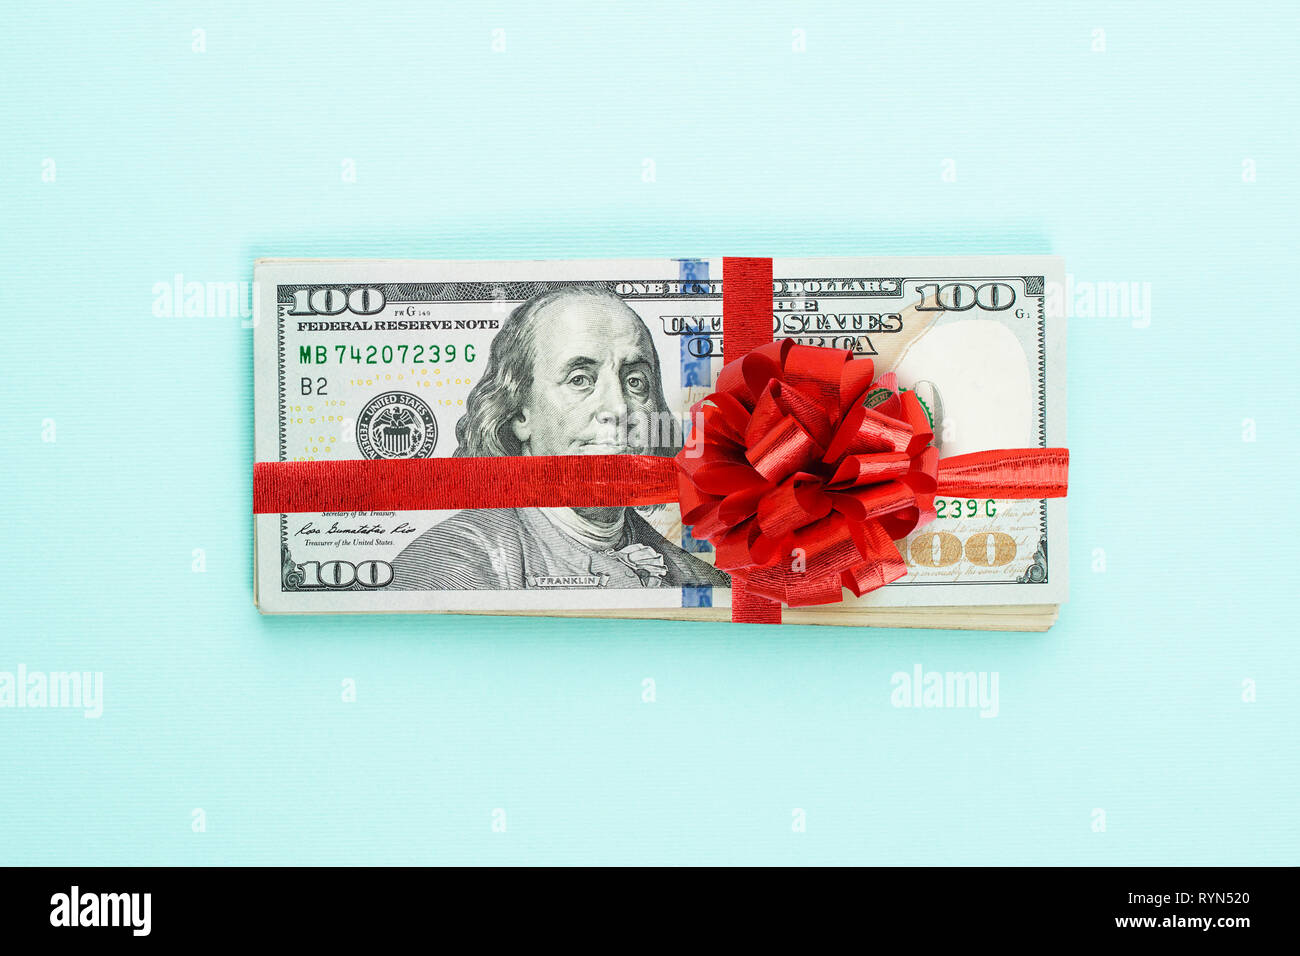 US Dollar Geld Bargeld mit rotem Band und Bogen auf blauem Hintergrund. 100 amerikanische Dollar banknote Geschenk gewinn Konzept Stockfoto